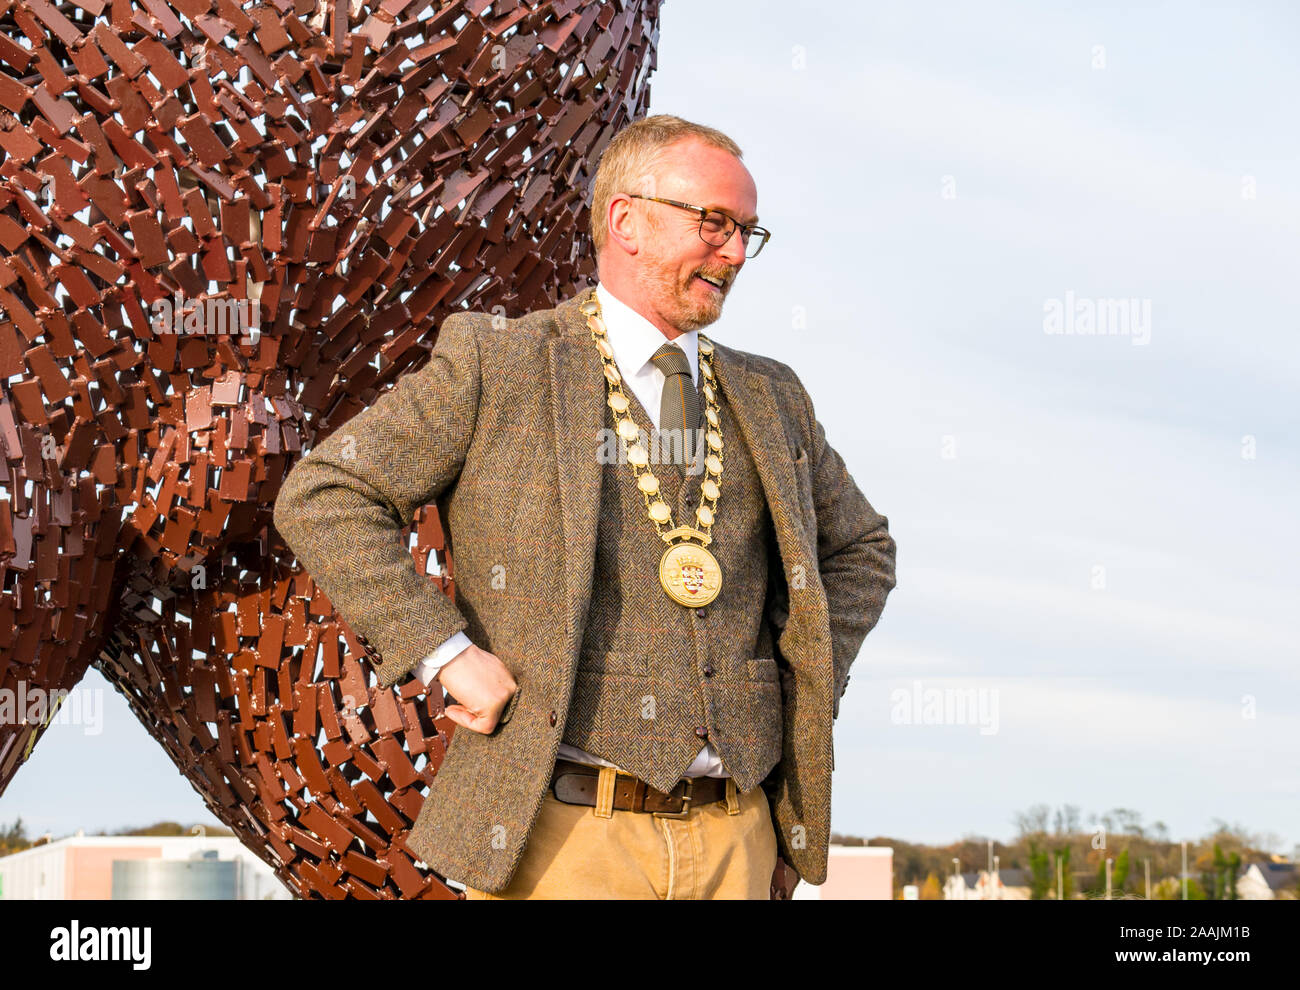 Dévoilement de la sculpture de l'ours pour célébrer la vie de John Muir par le sculpteur Andy Scott porter Provost chaîne, Dunbar, East Lothian, Scotland, UK Banque D'Images